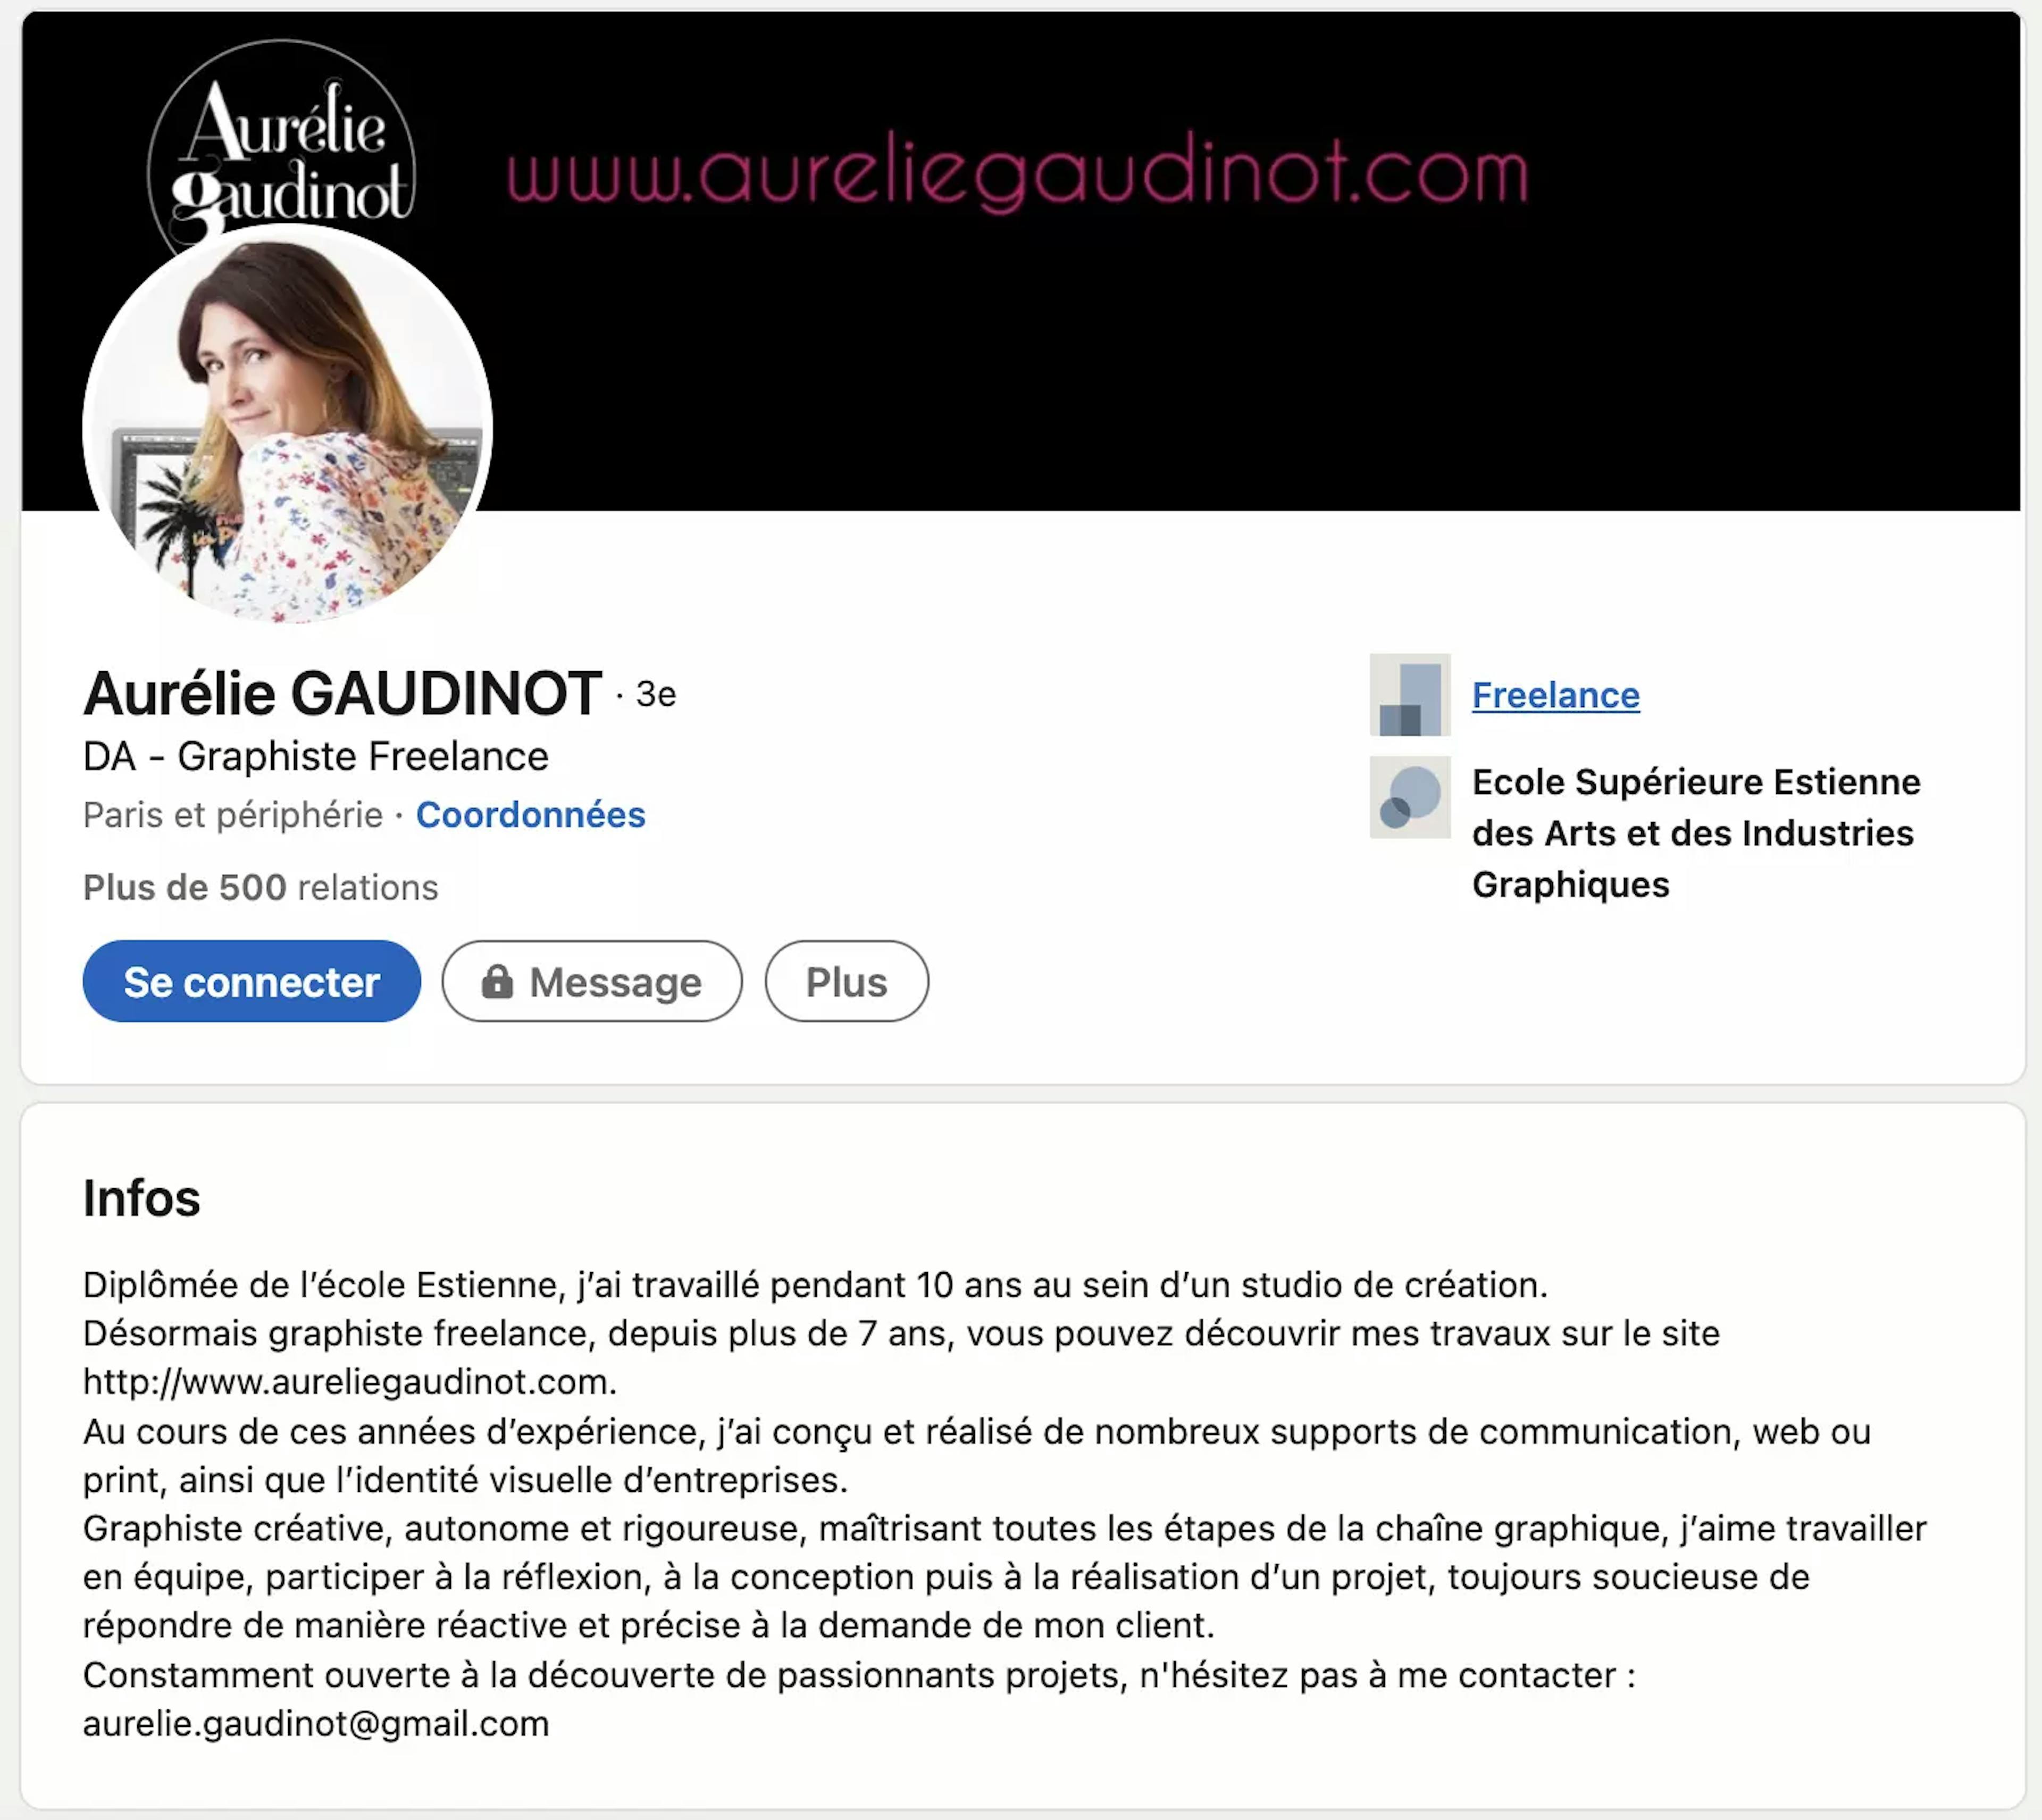 Description du profil d'Aurélie GAUDINOT, graphiste freelance sur Linkedin